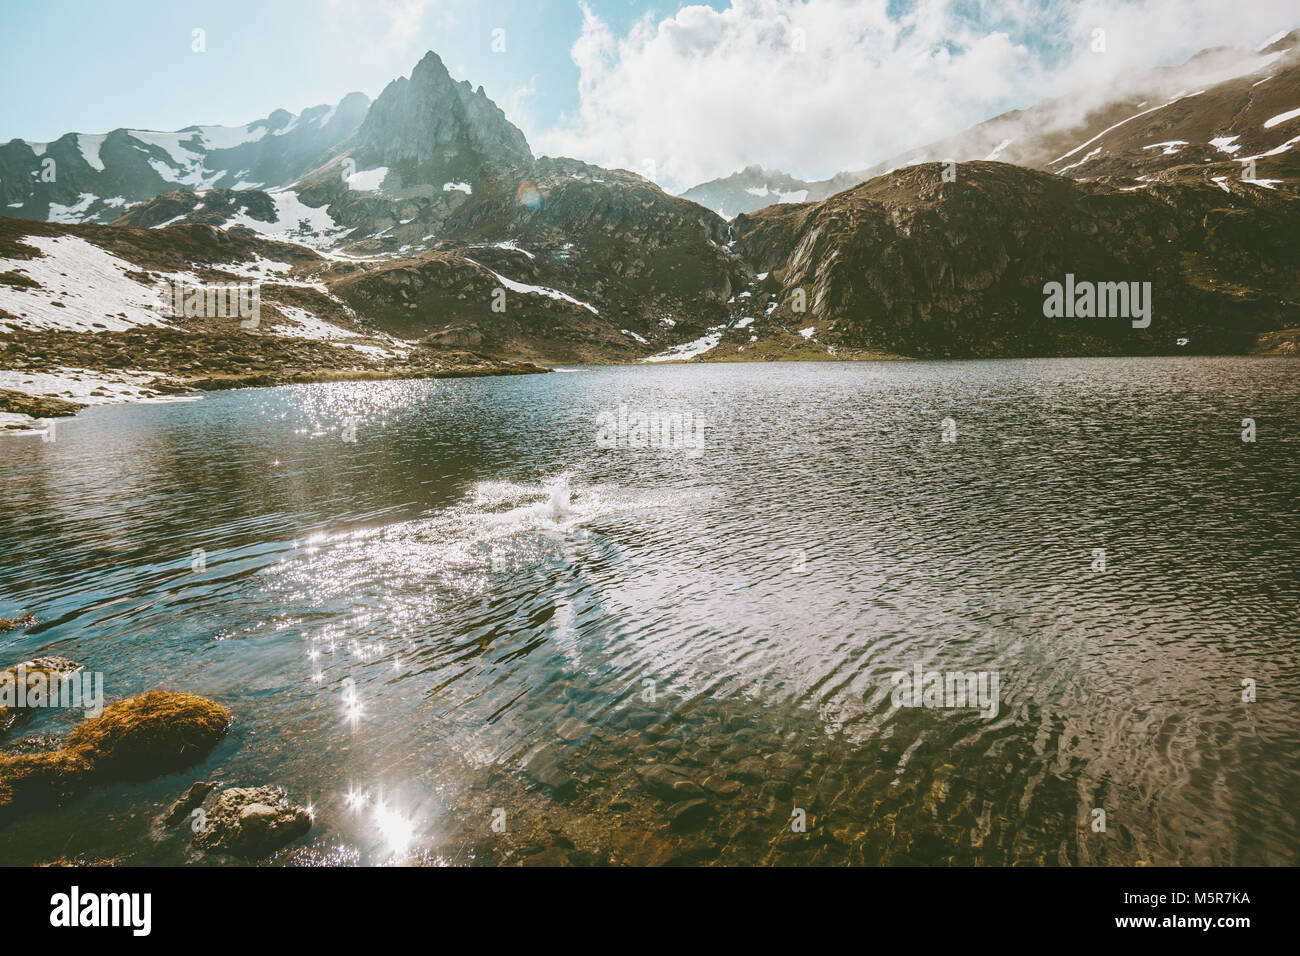 Lac paysage montagnes nature sauvage en plein air d'été matin scenery Banque D'Images